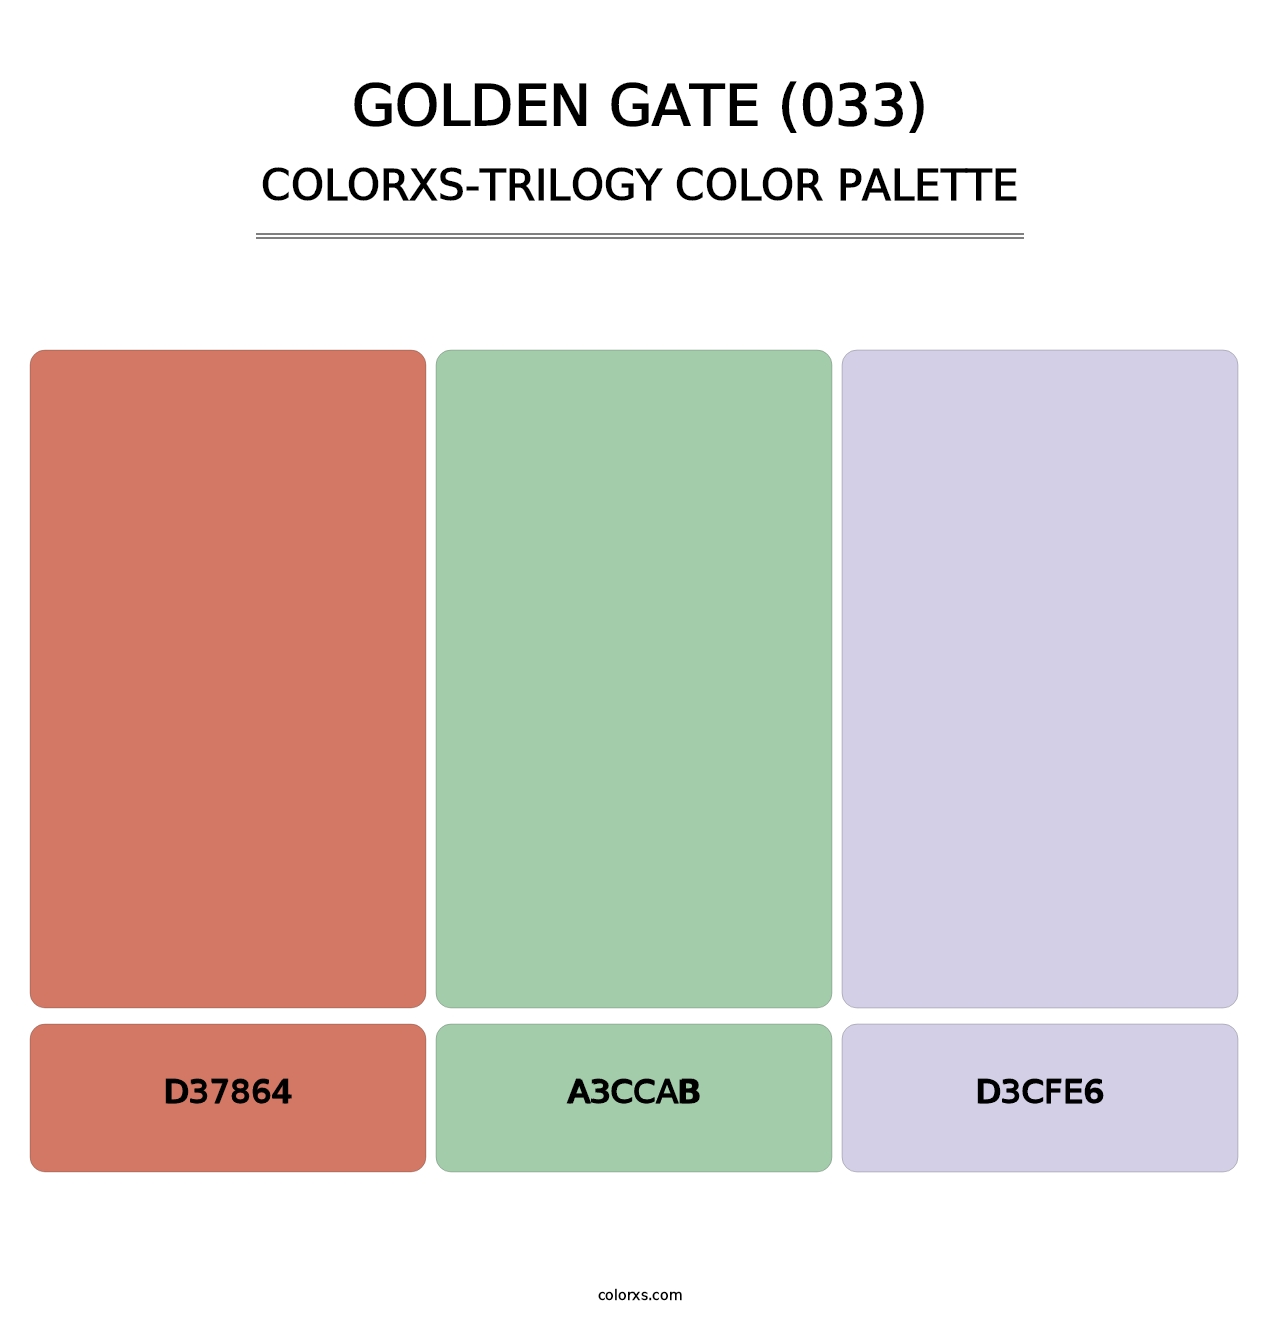 Golden Gate (033) - Colorxs Trilogy Palette